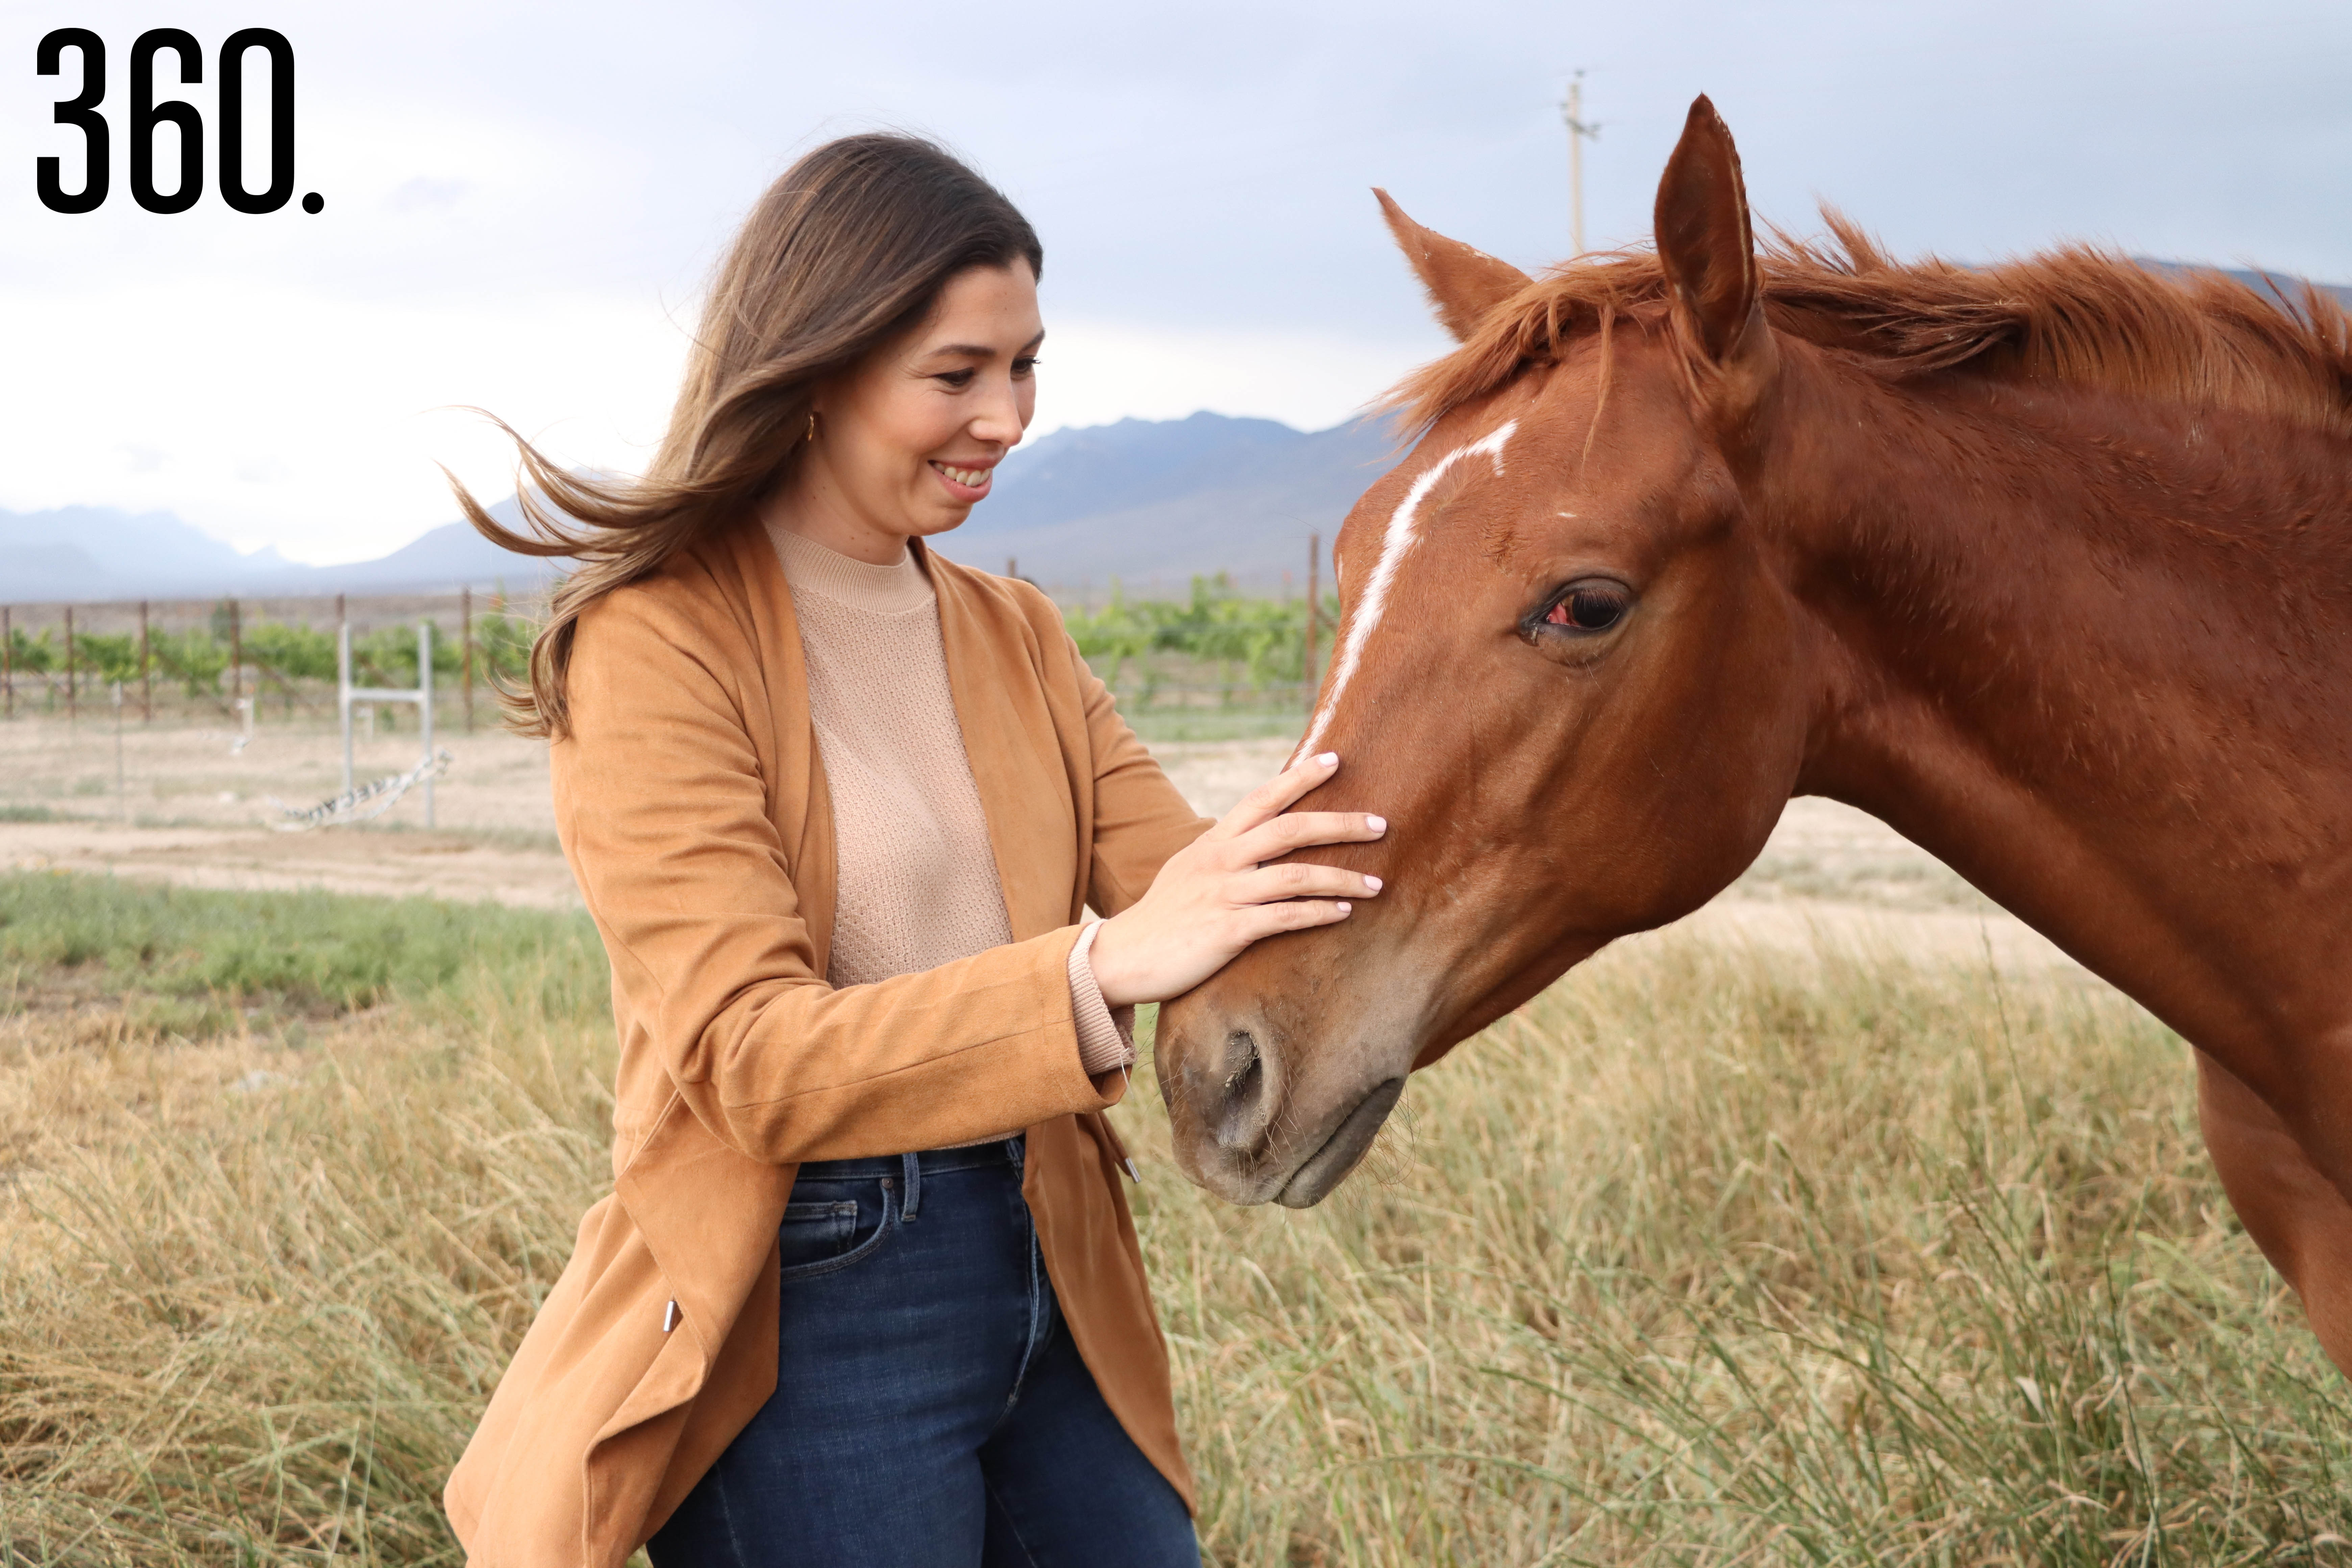 Desde su infancia, Roberta Ramón Treviño ha compartido momentos especiales con los caballos, lo que ha despertado un profundo amor por ellos.